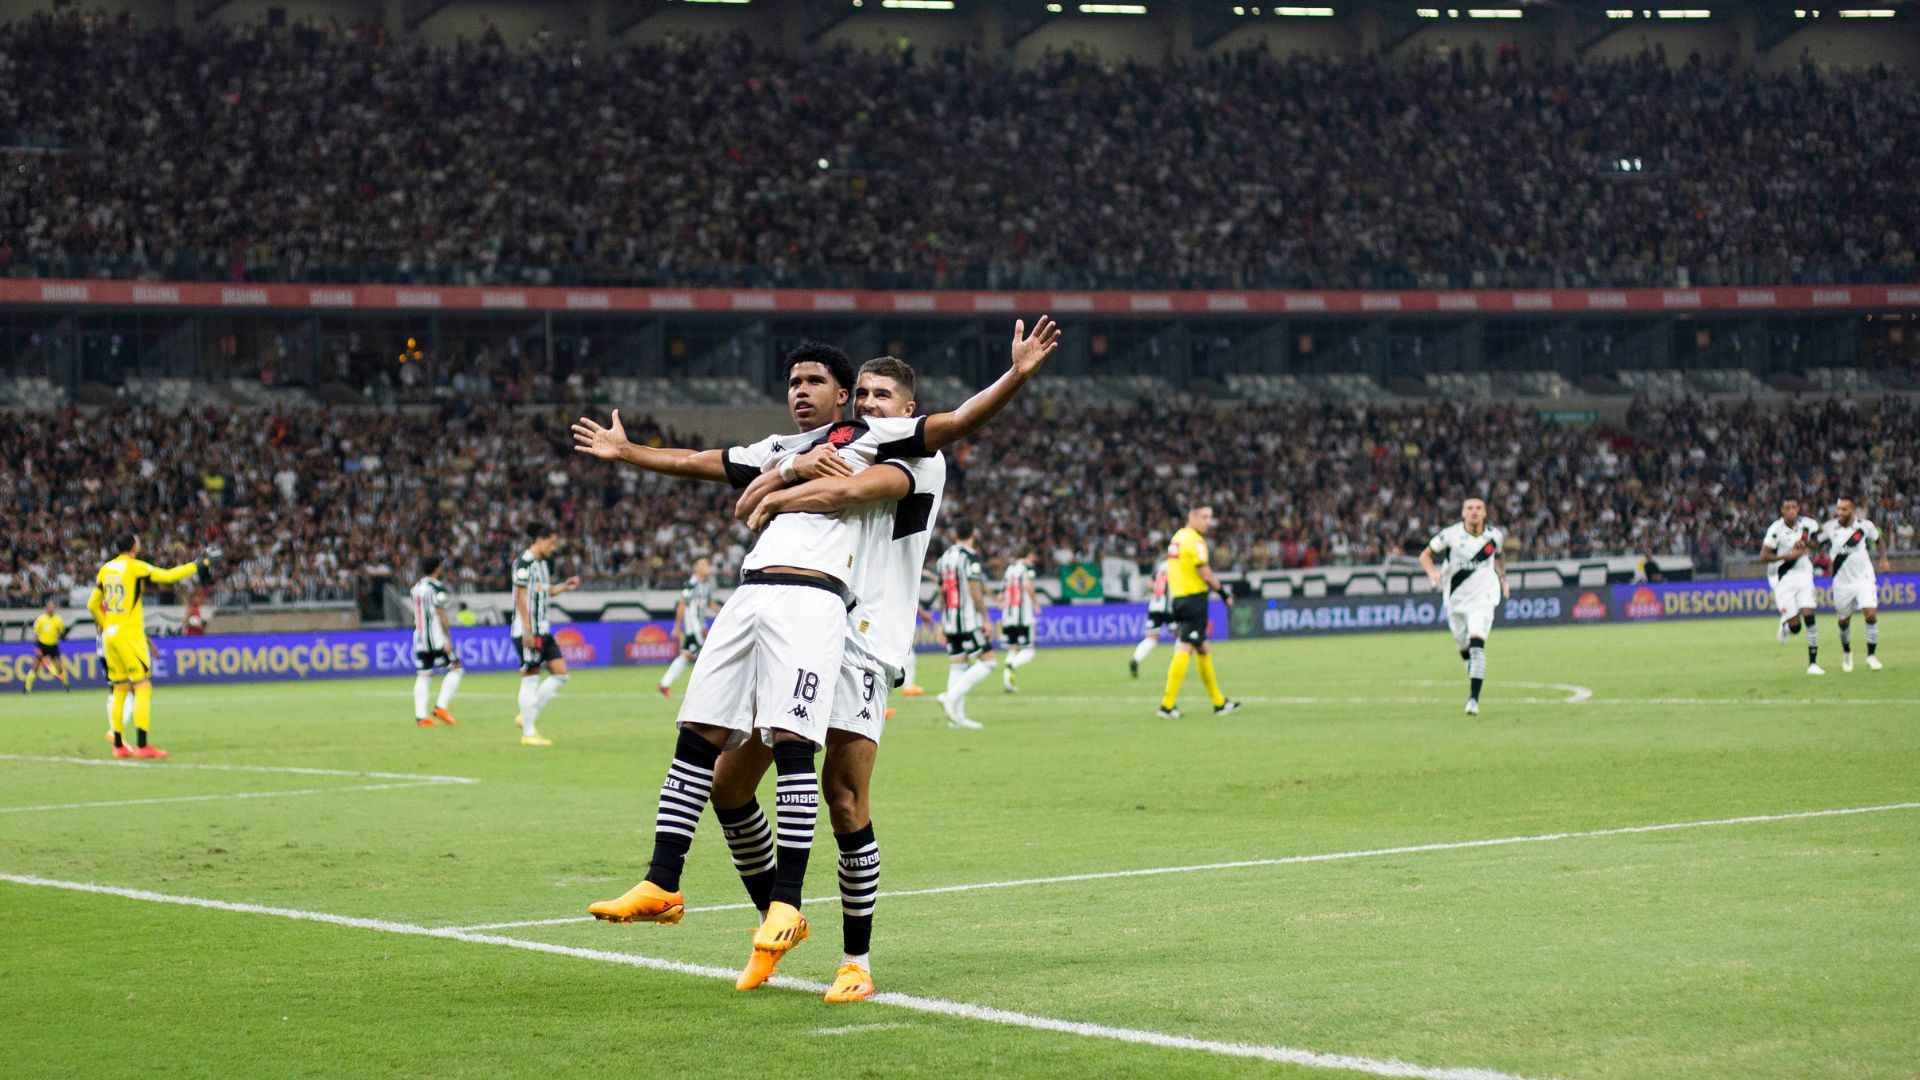 Andrey e Pedro Raul comemoram o gol do Vasco